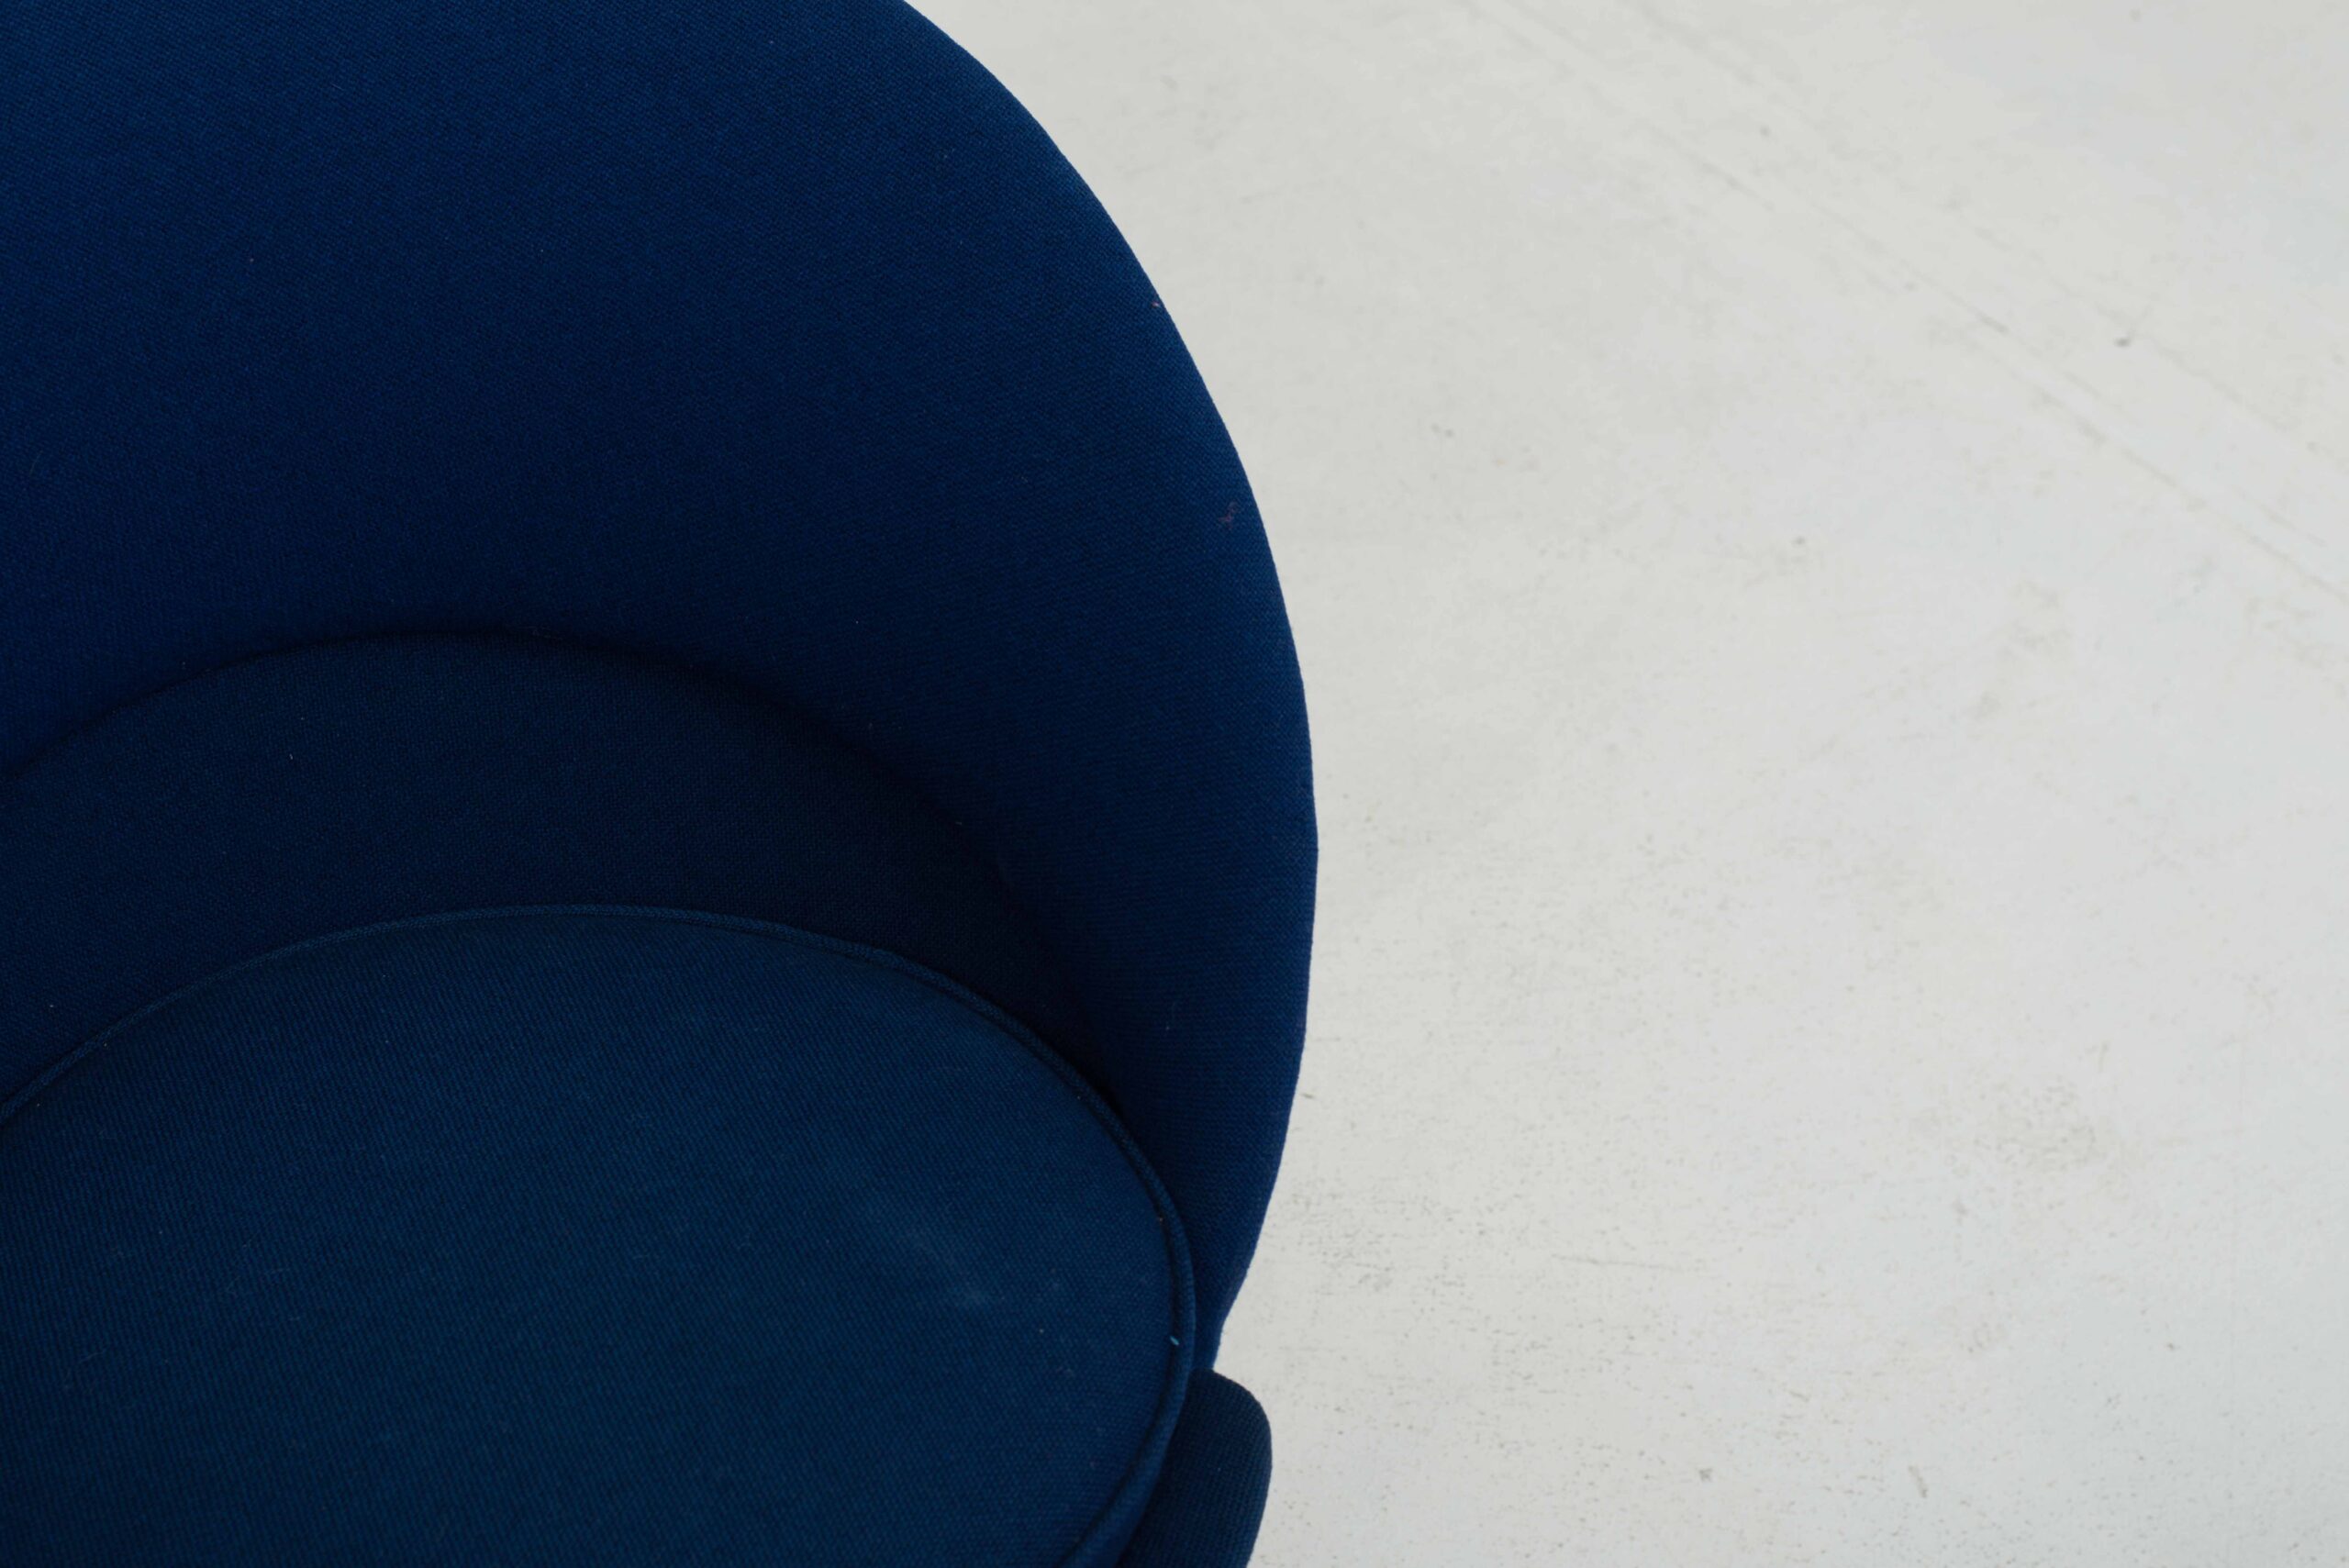 Vitra Cone Chair von Verner Panton in Blau-4